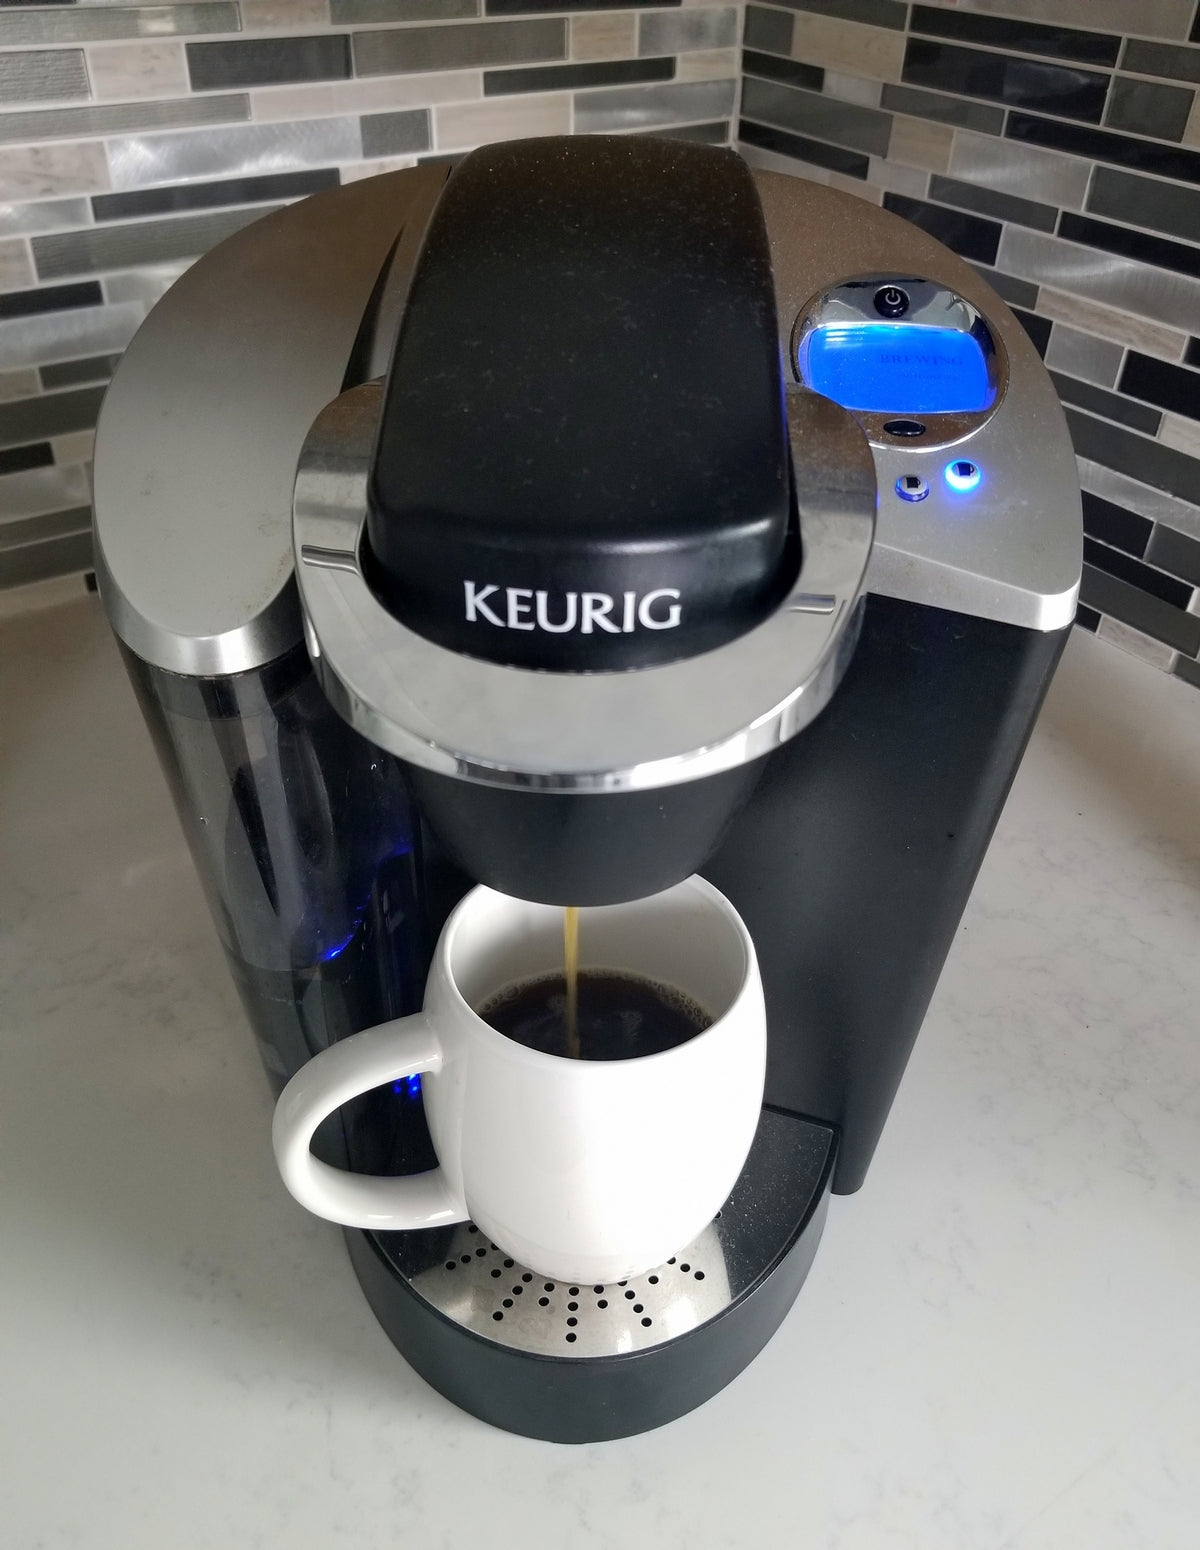 How Do Keurig Coffee Makers Work?